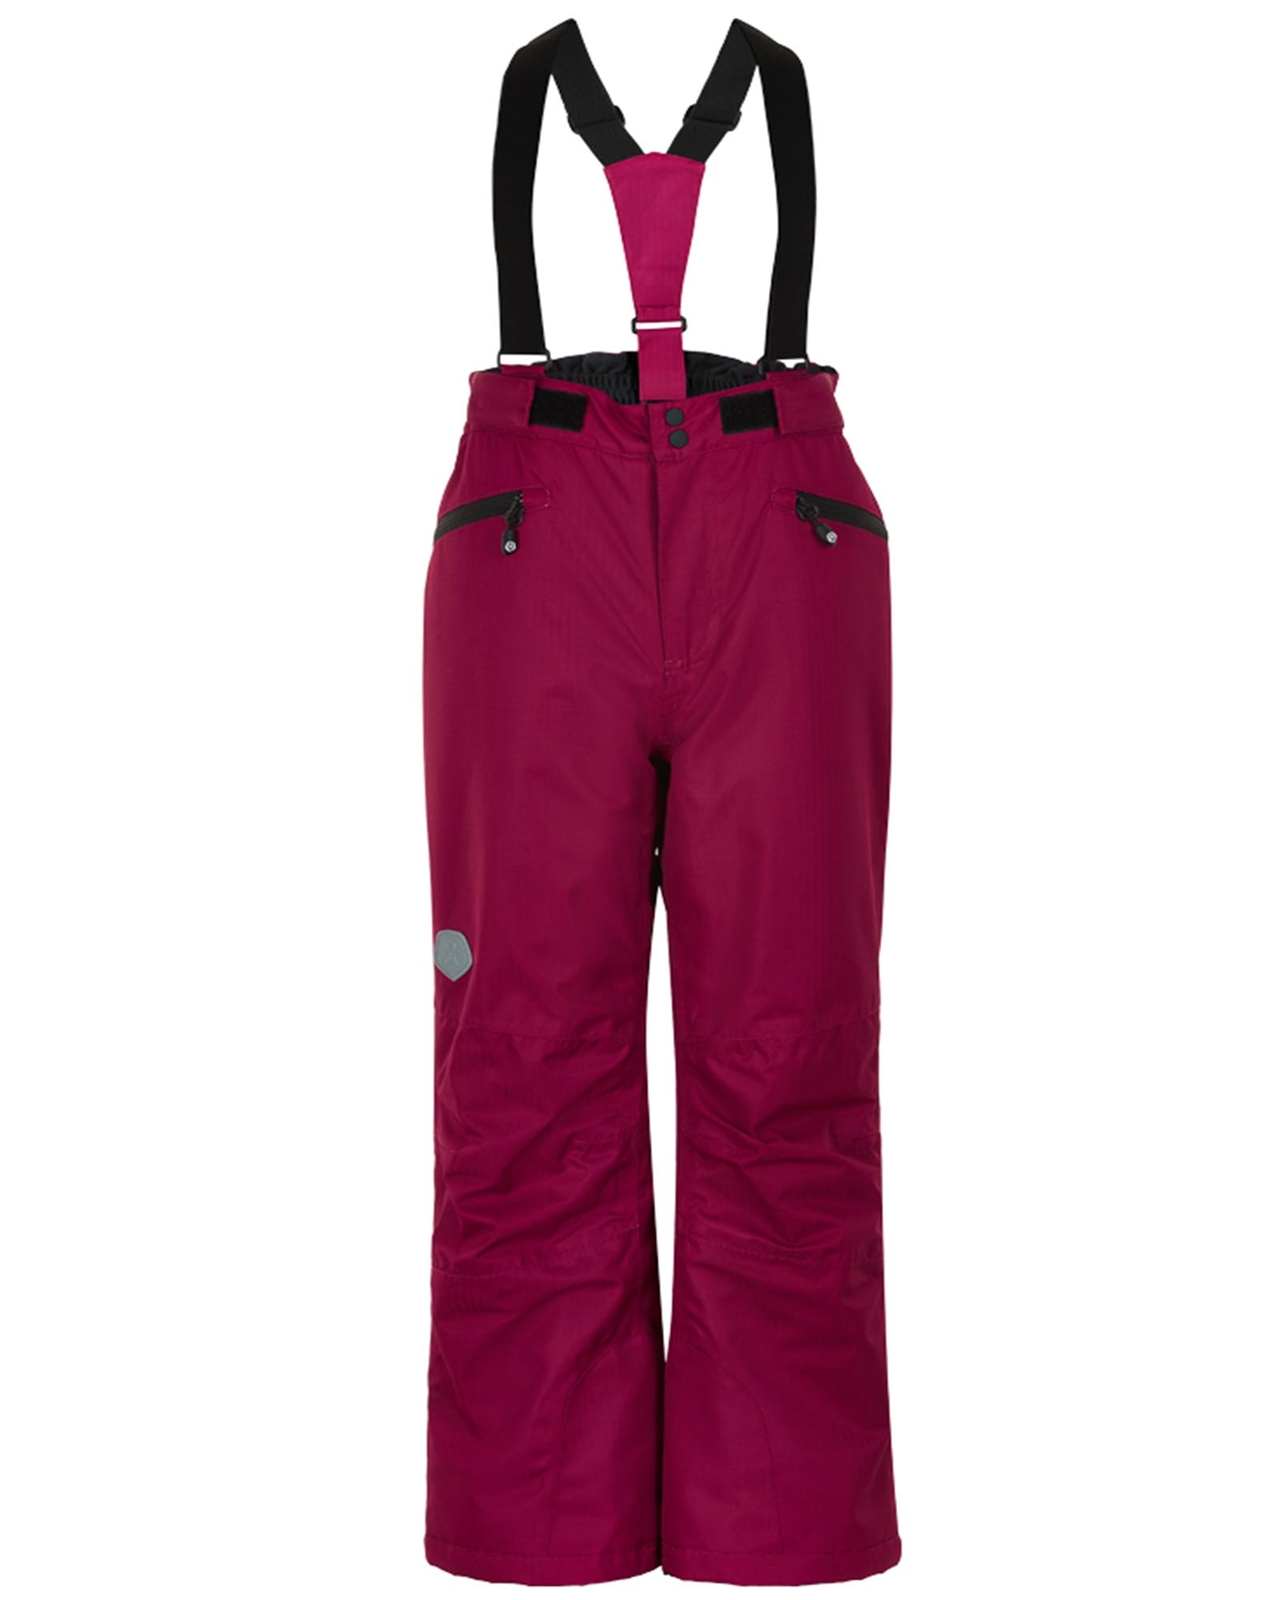 COLOR KIDS Girls' Ski Pants in Burgundy, Sizes 6-12